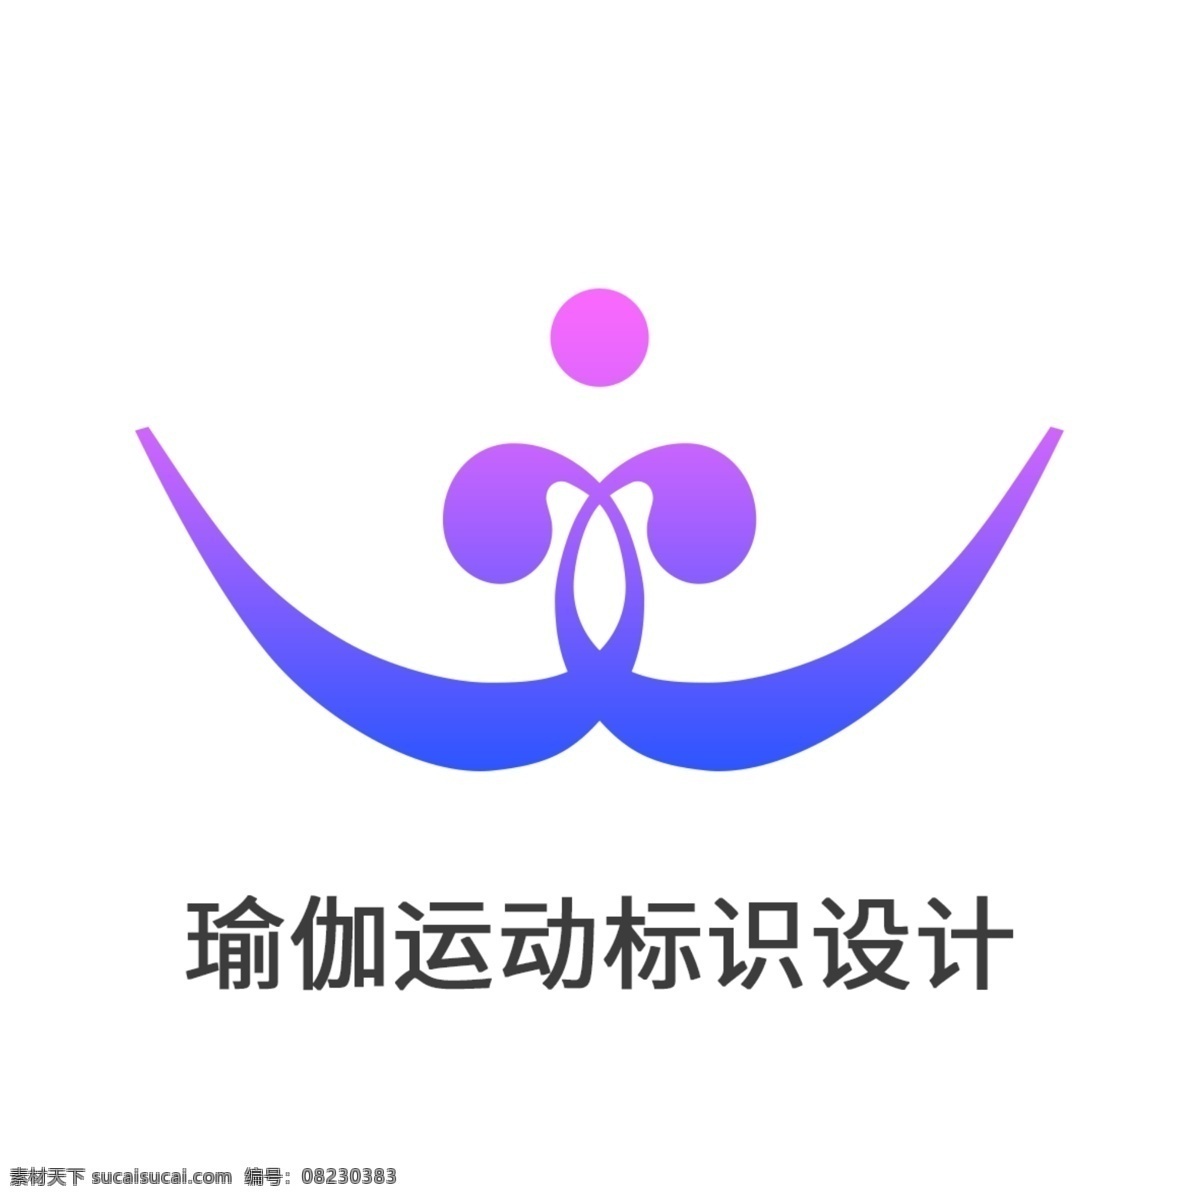 创意 vi 瑜伽 运动 标识 标志 logo 元素 健身 体育 渐变色 紫色 设计元素